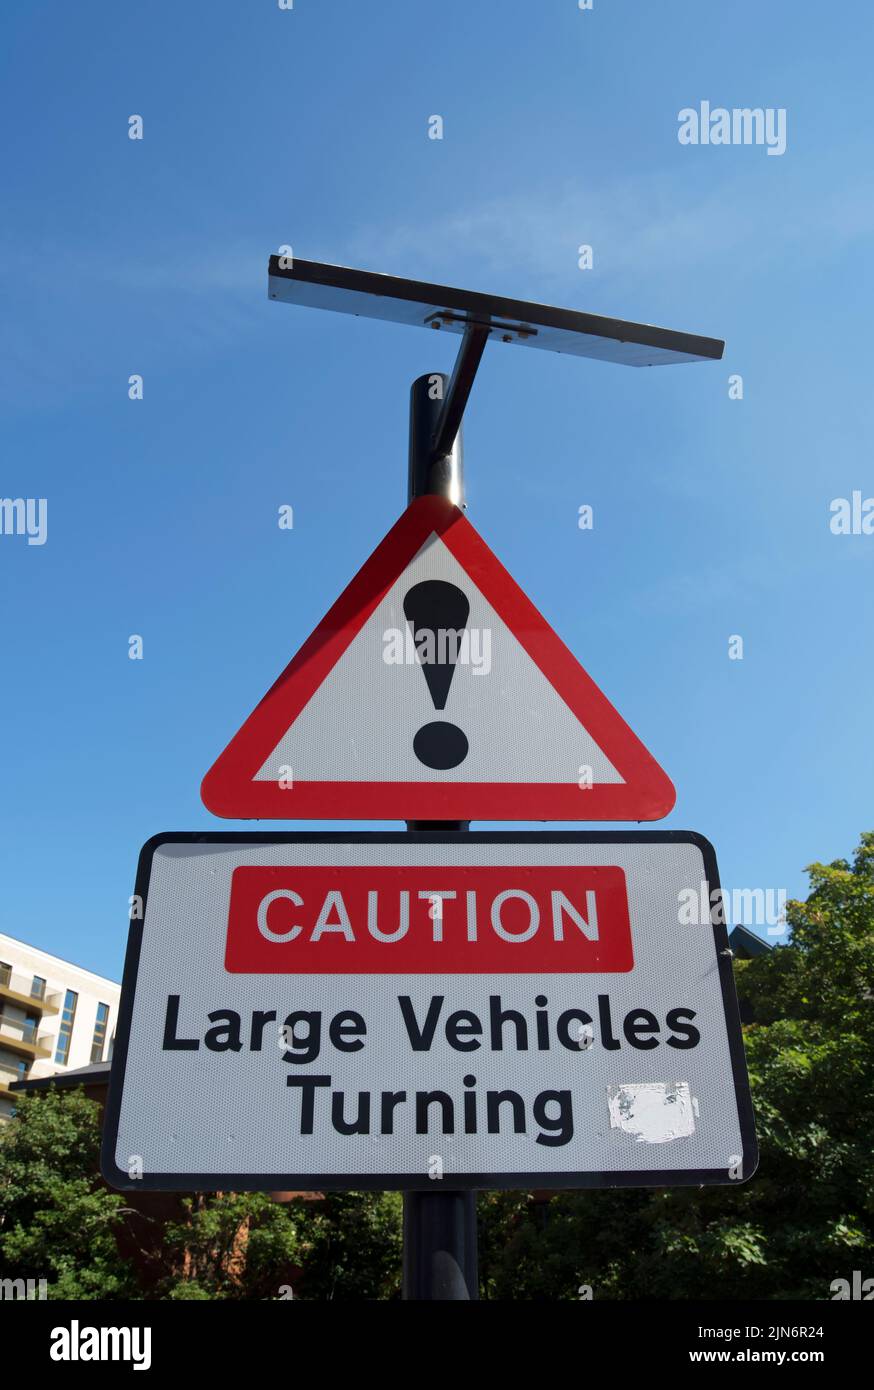 britische Straßenschilder, ein Ausrufezeichen und eine Warnung vor großen Wendefahrzeugen in brentford, london, england Stockfoto